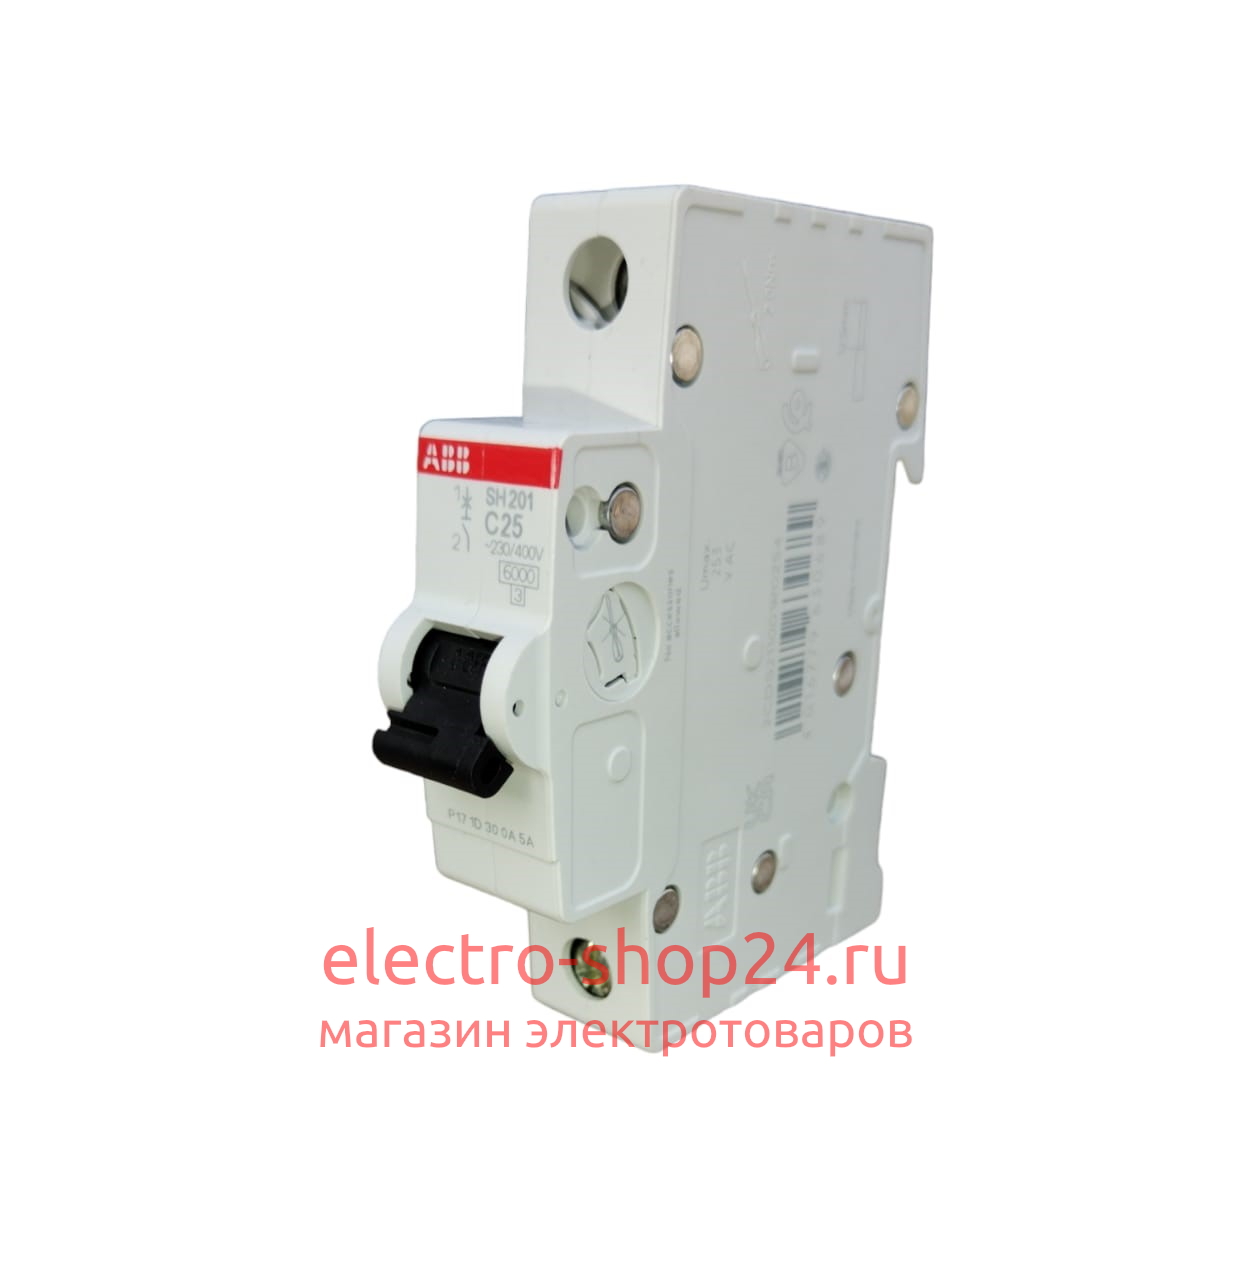 SH201 C25 Автоматический выключатель 1-полюсный 25А 6кА (хар-ка C) ABB 2CDS211001R0254 2CDS211001R0254 - магазин электротехники Electroshop